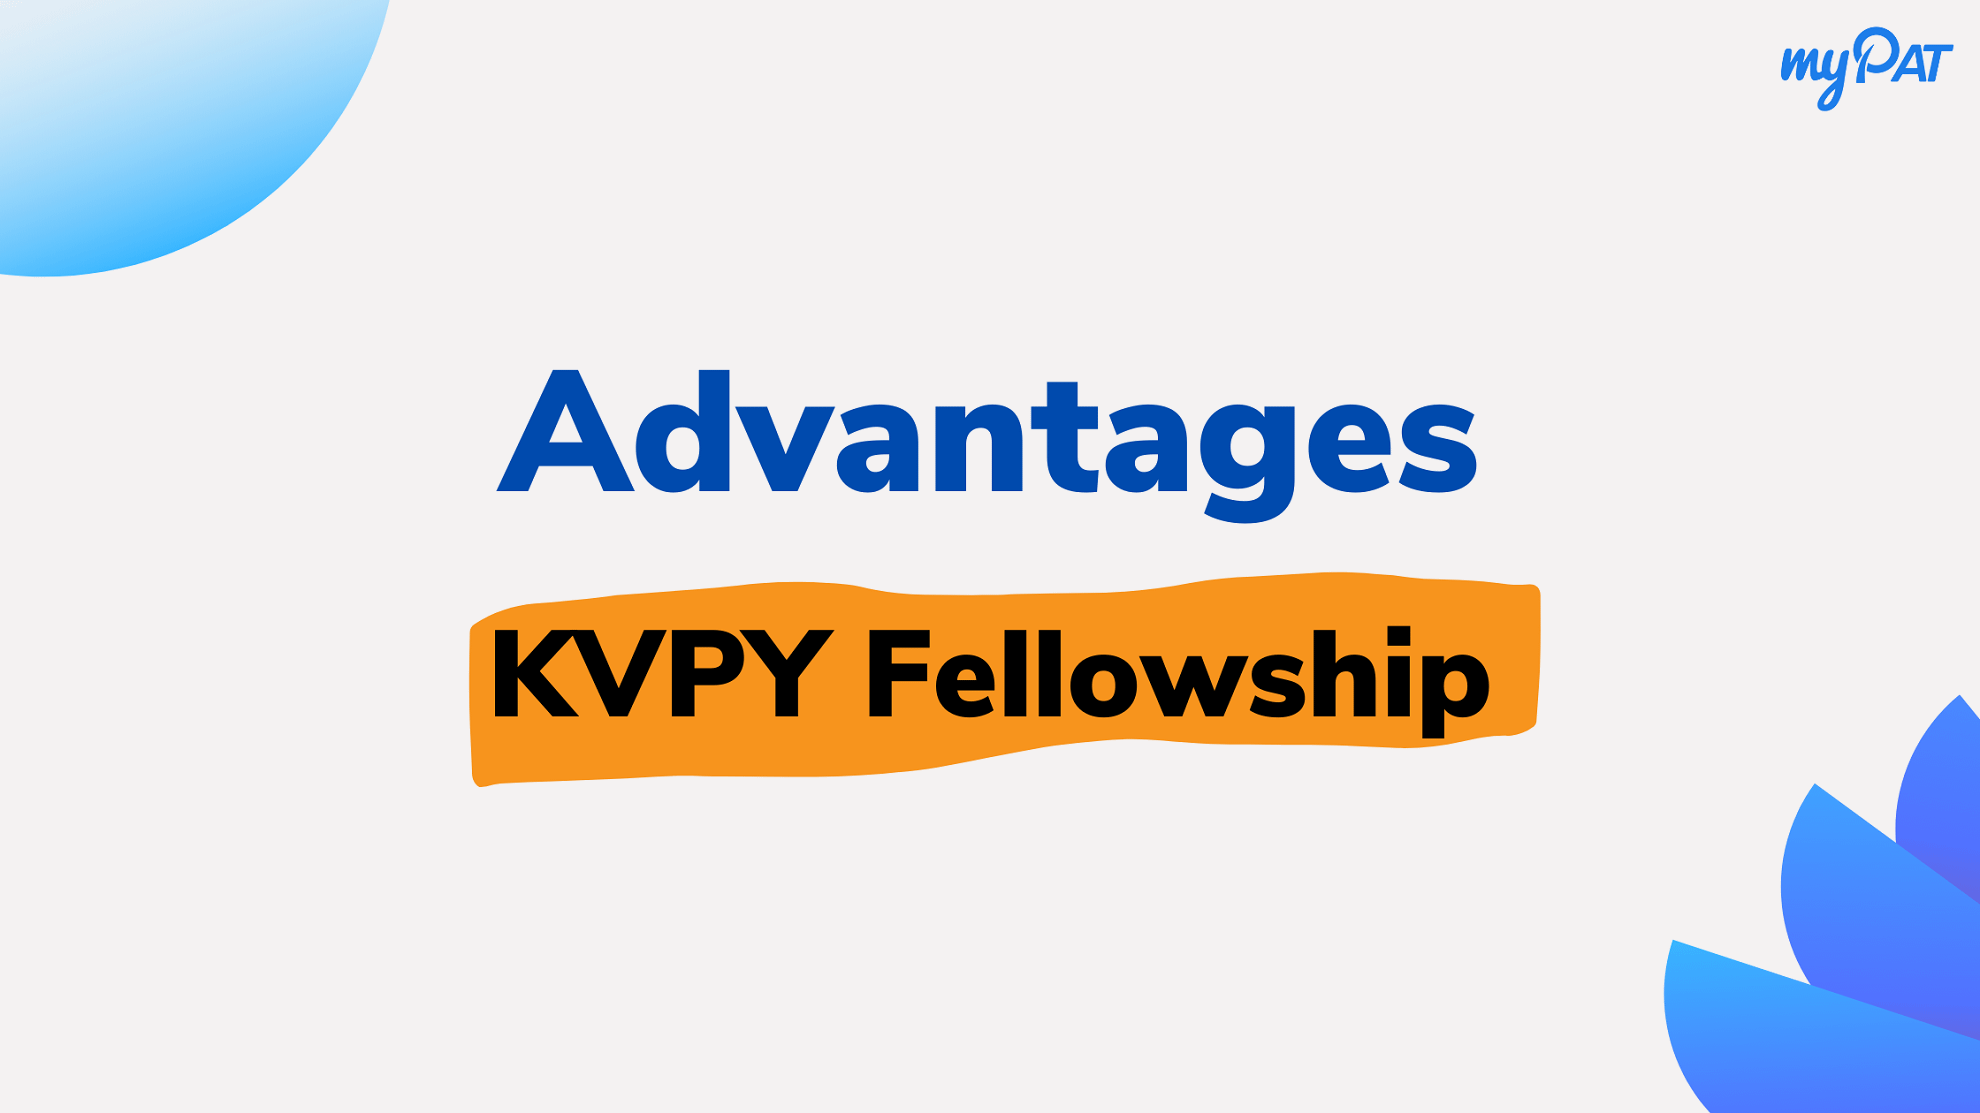 KVPY Fellowship